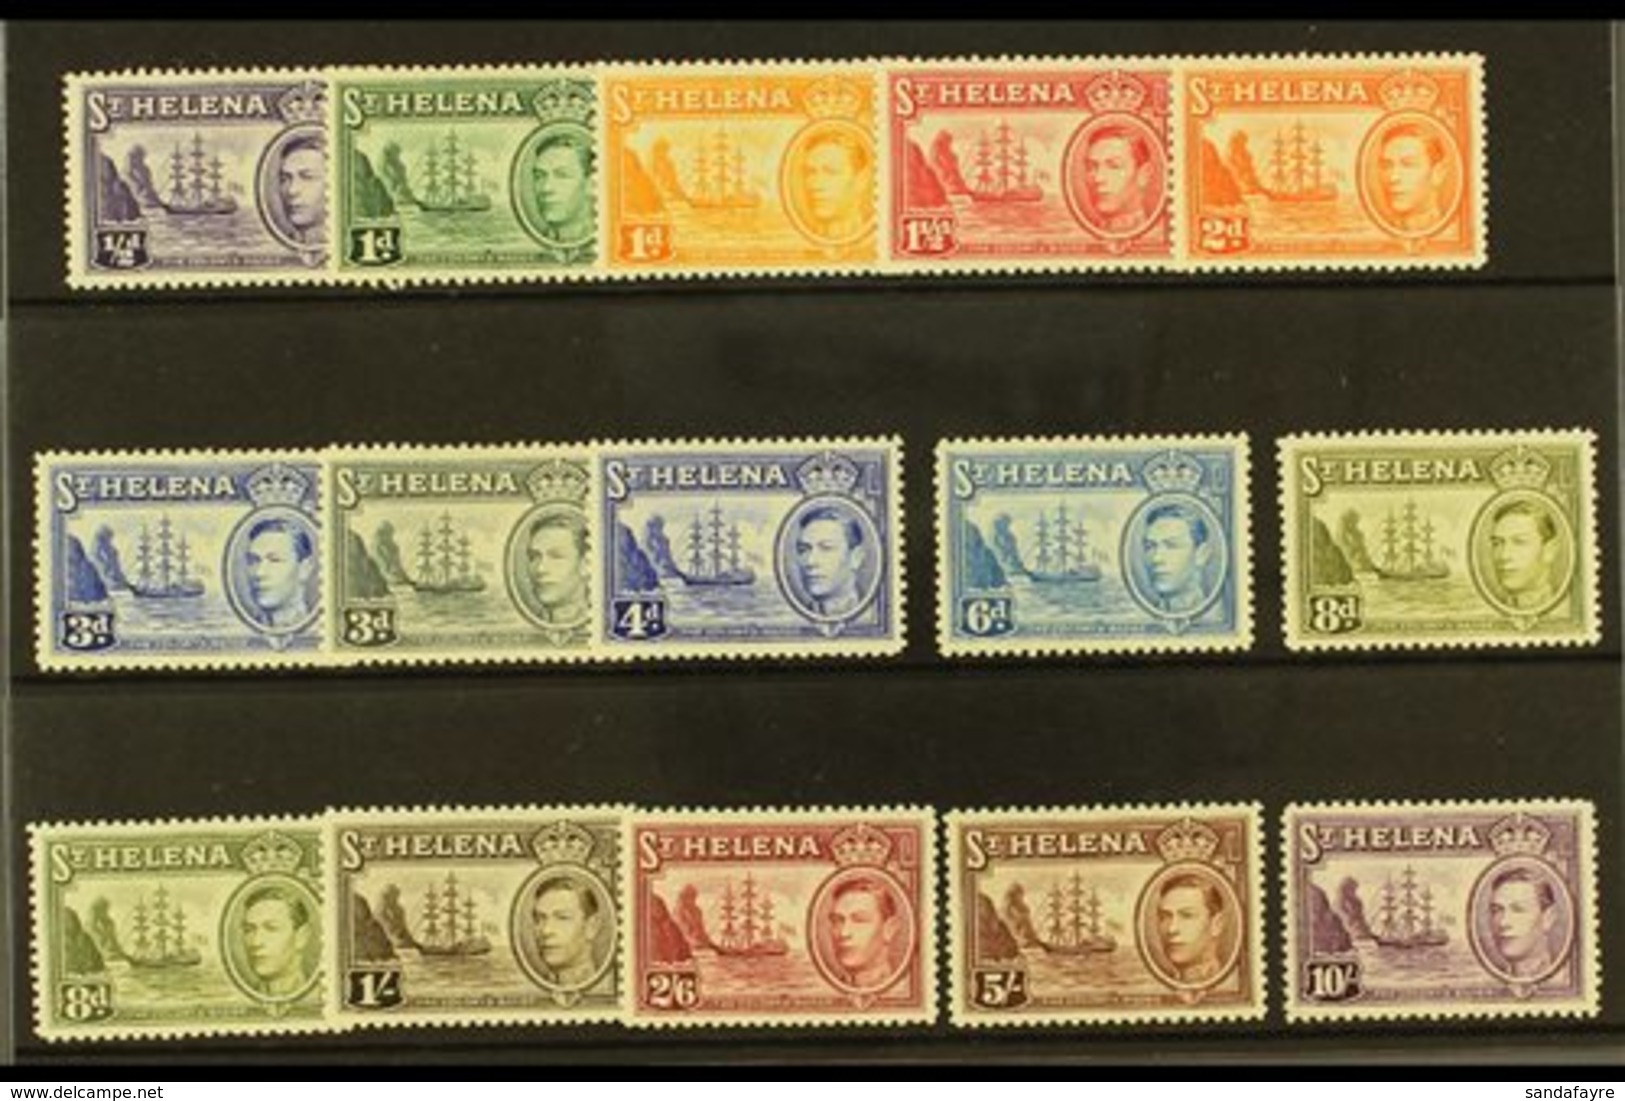 1938-44 Pictorial Definitive Set Plus 8d Listed Shade, SG 131/40, Fine Mint (15 Stamps) For More Images, Please Visit Ht - Sainte-Hélène